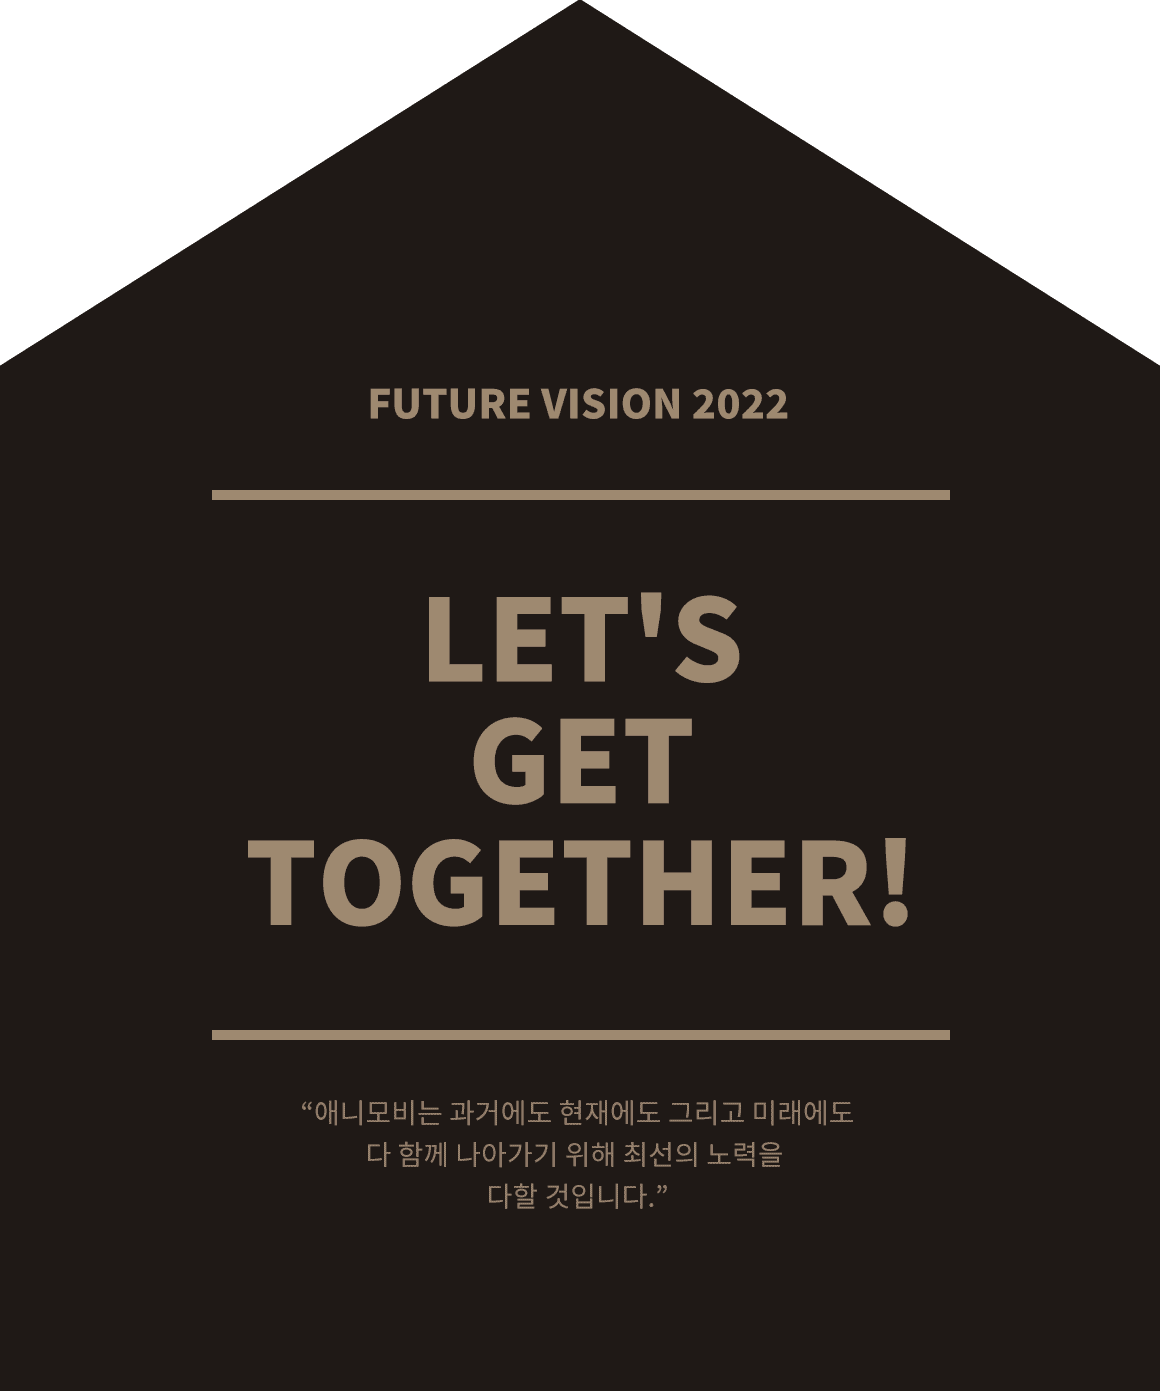 Future Vision 2022. Let's get together!